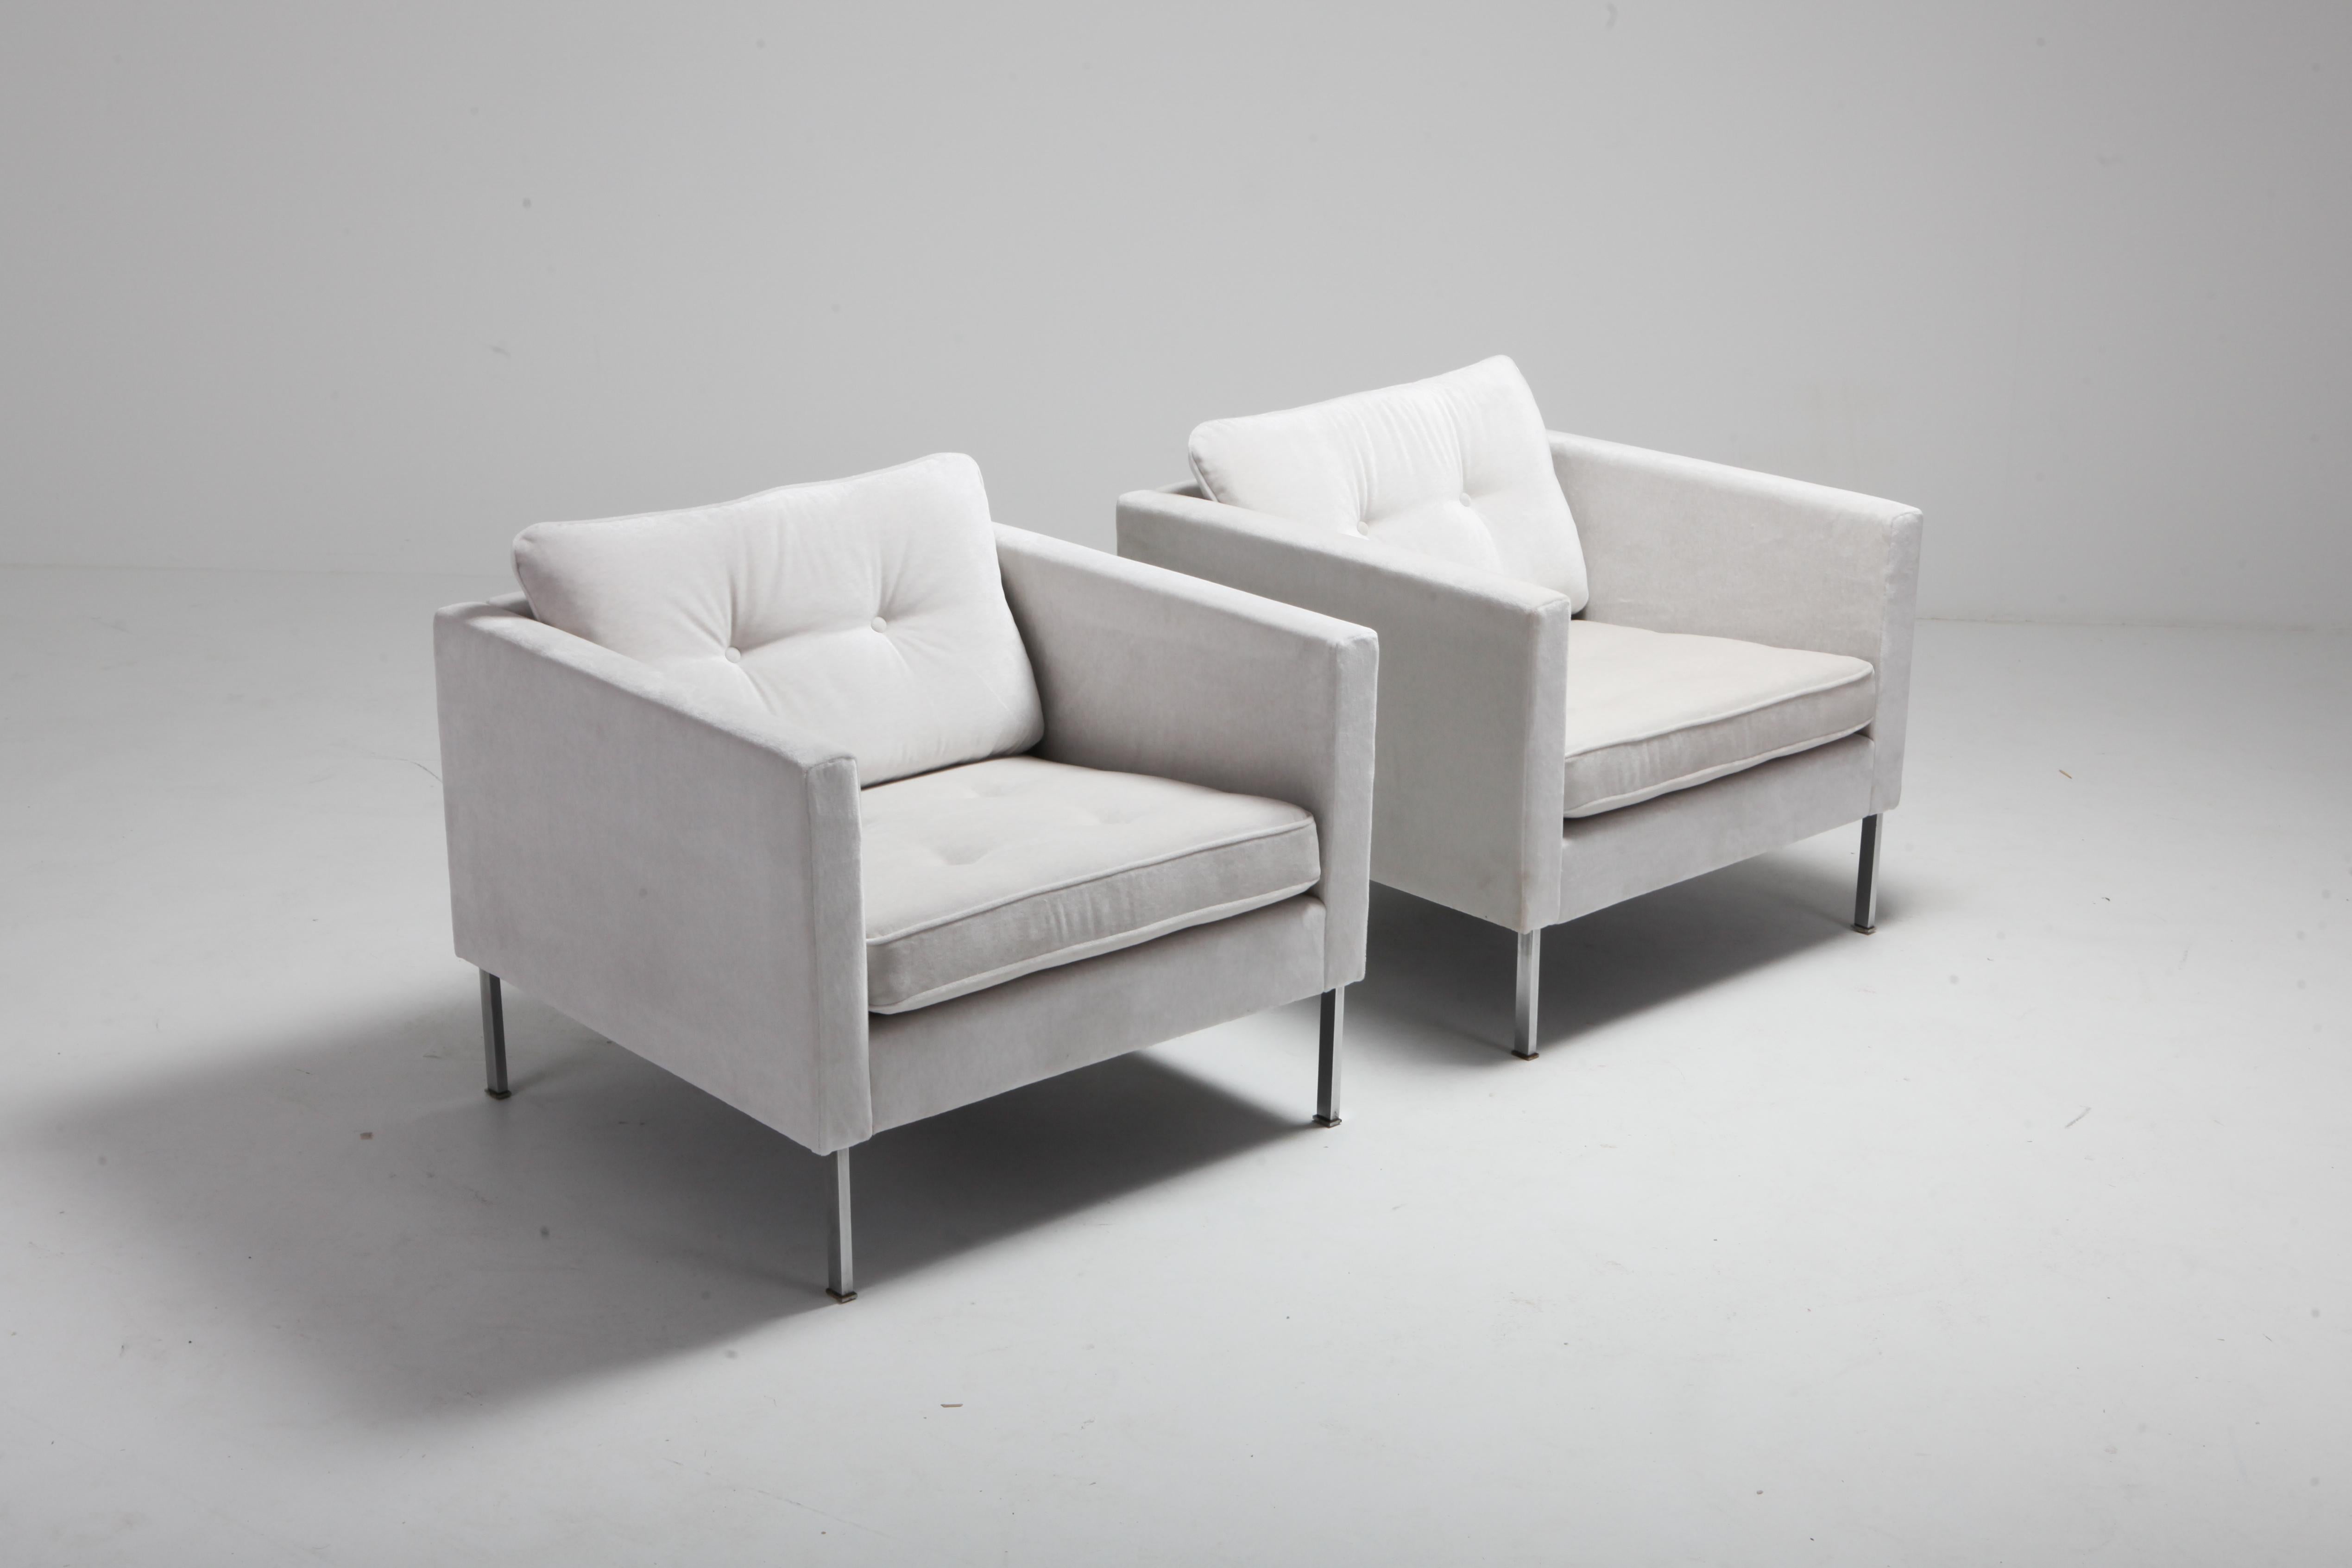 Artifort 446 Lounge Chairs, entworfen von Pierre Paulin und hergestellt in Holland, 1962. Die Stühle wurden neu mit cremefarbenem/hellgrauem Samt gepolstert. Die Stühle haben massive, verchromte Stahlbeine. Dies ist ein äußerst seltenes und sehr